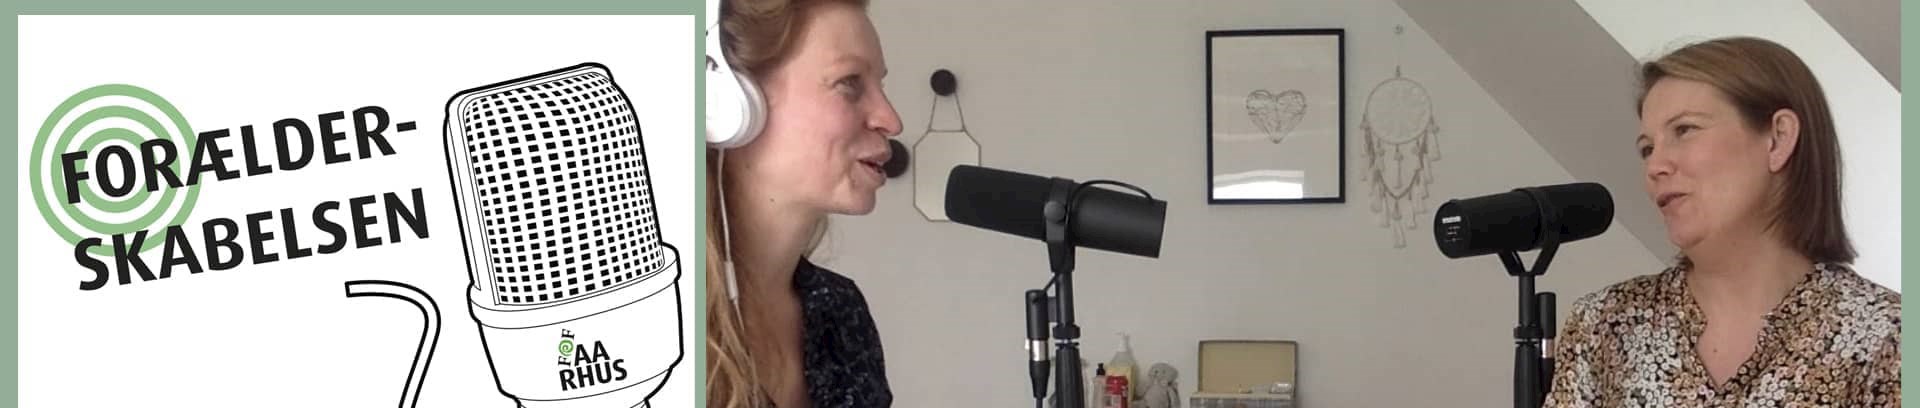 Nanna Cæcilie Thrane og Winnie Elholm, vært og gæstevært på podcasten Forælderskabelsen af FOF Aarhus